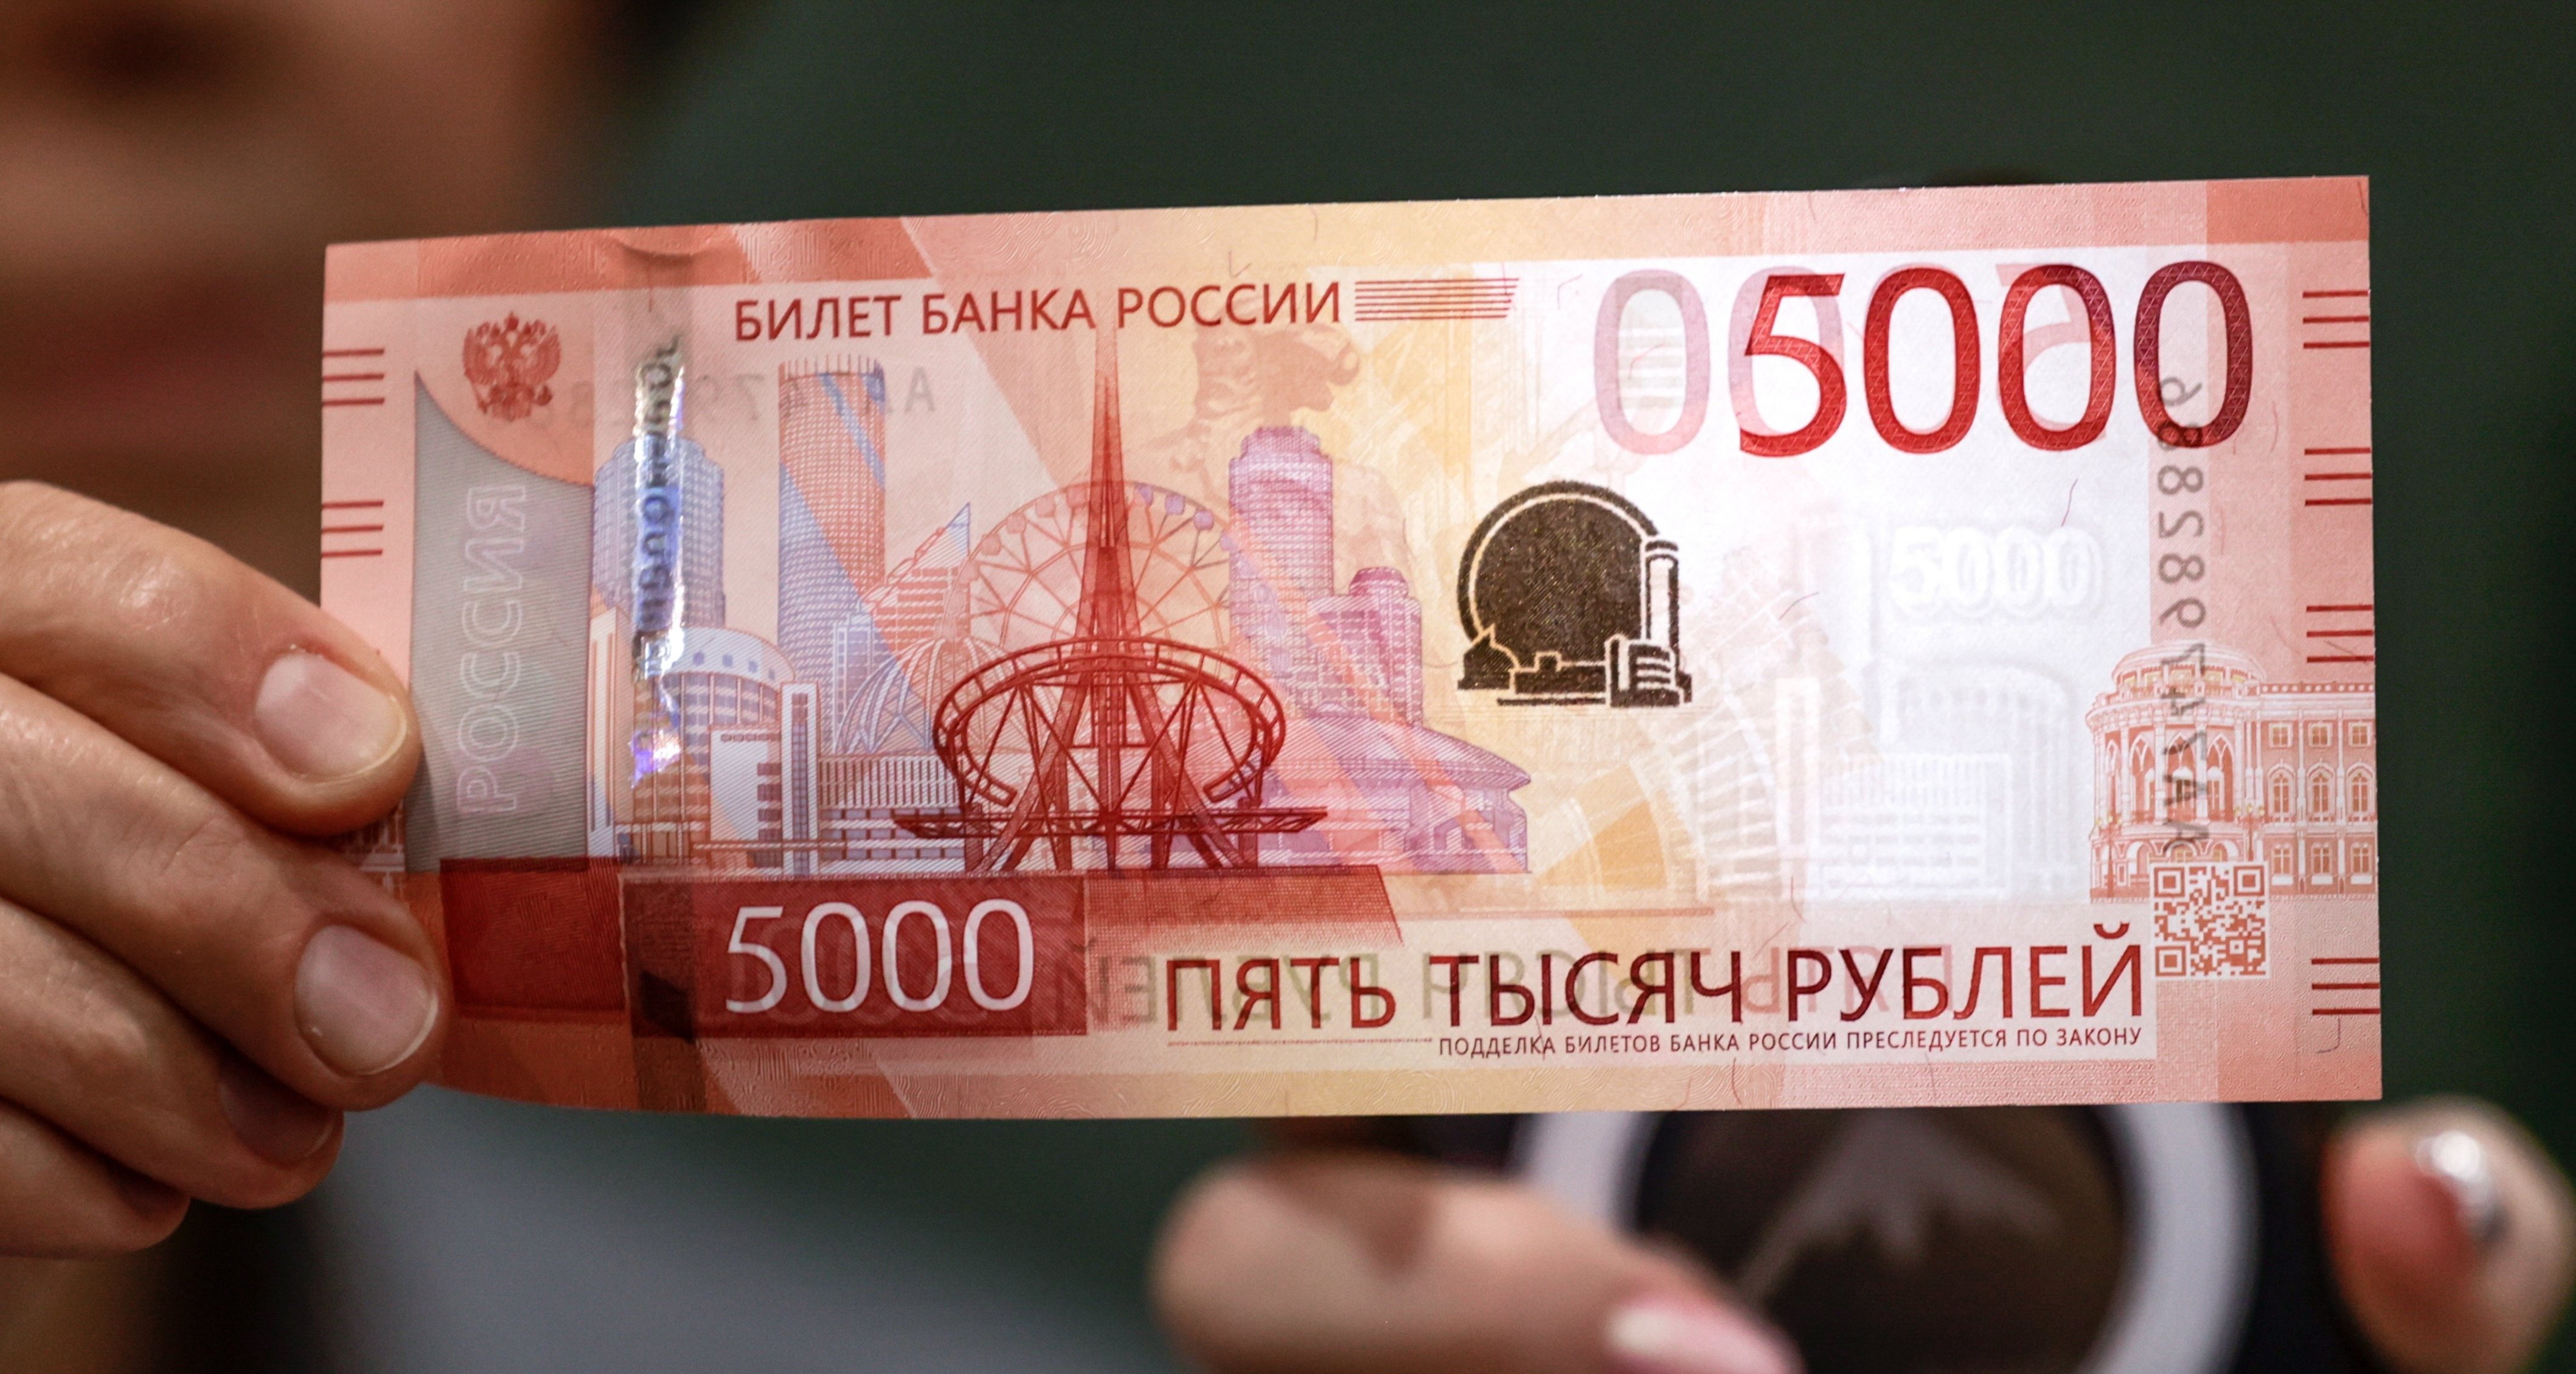 ЦБ предупредил о новой мошеннической схеме с 5000-рублевыми банкнотами